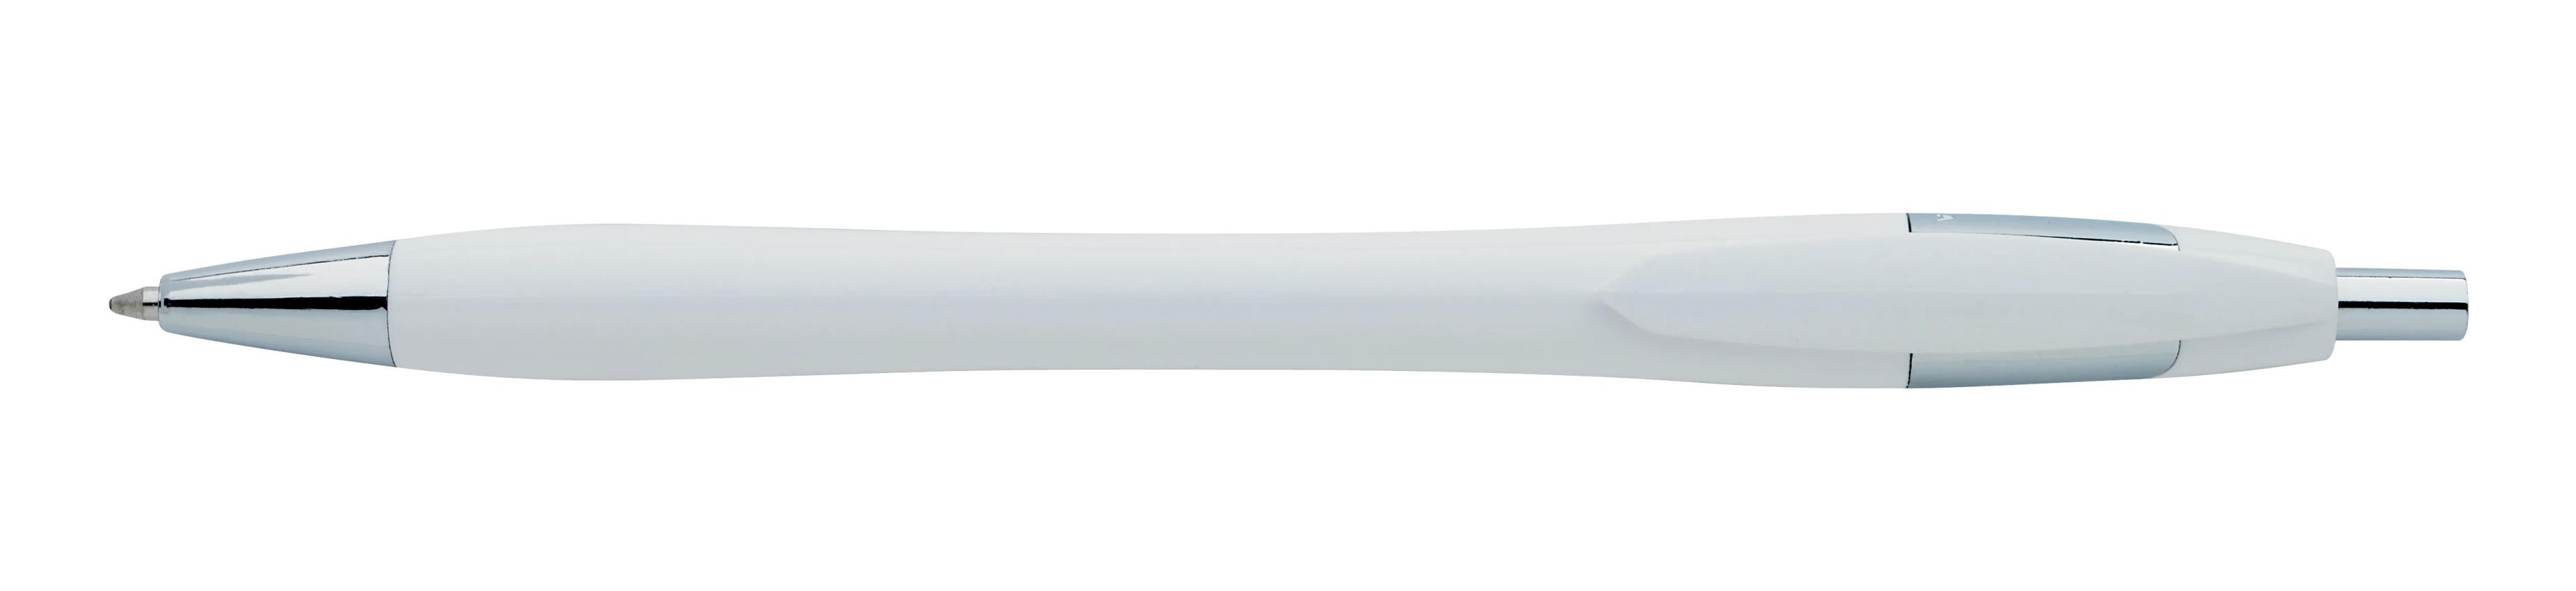 Chrome Dart Pen 1 of 32